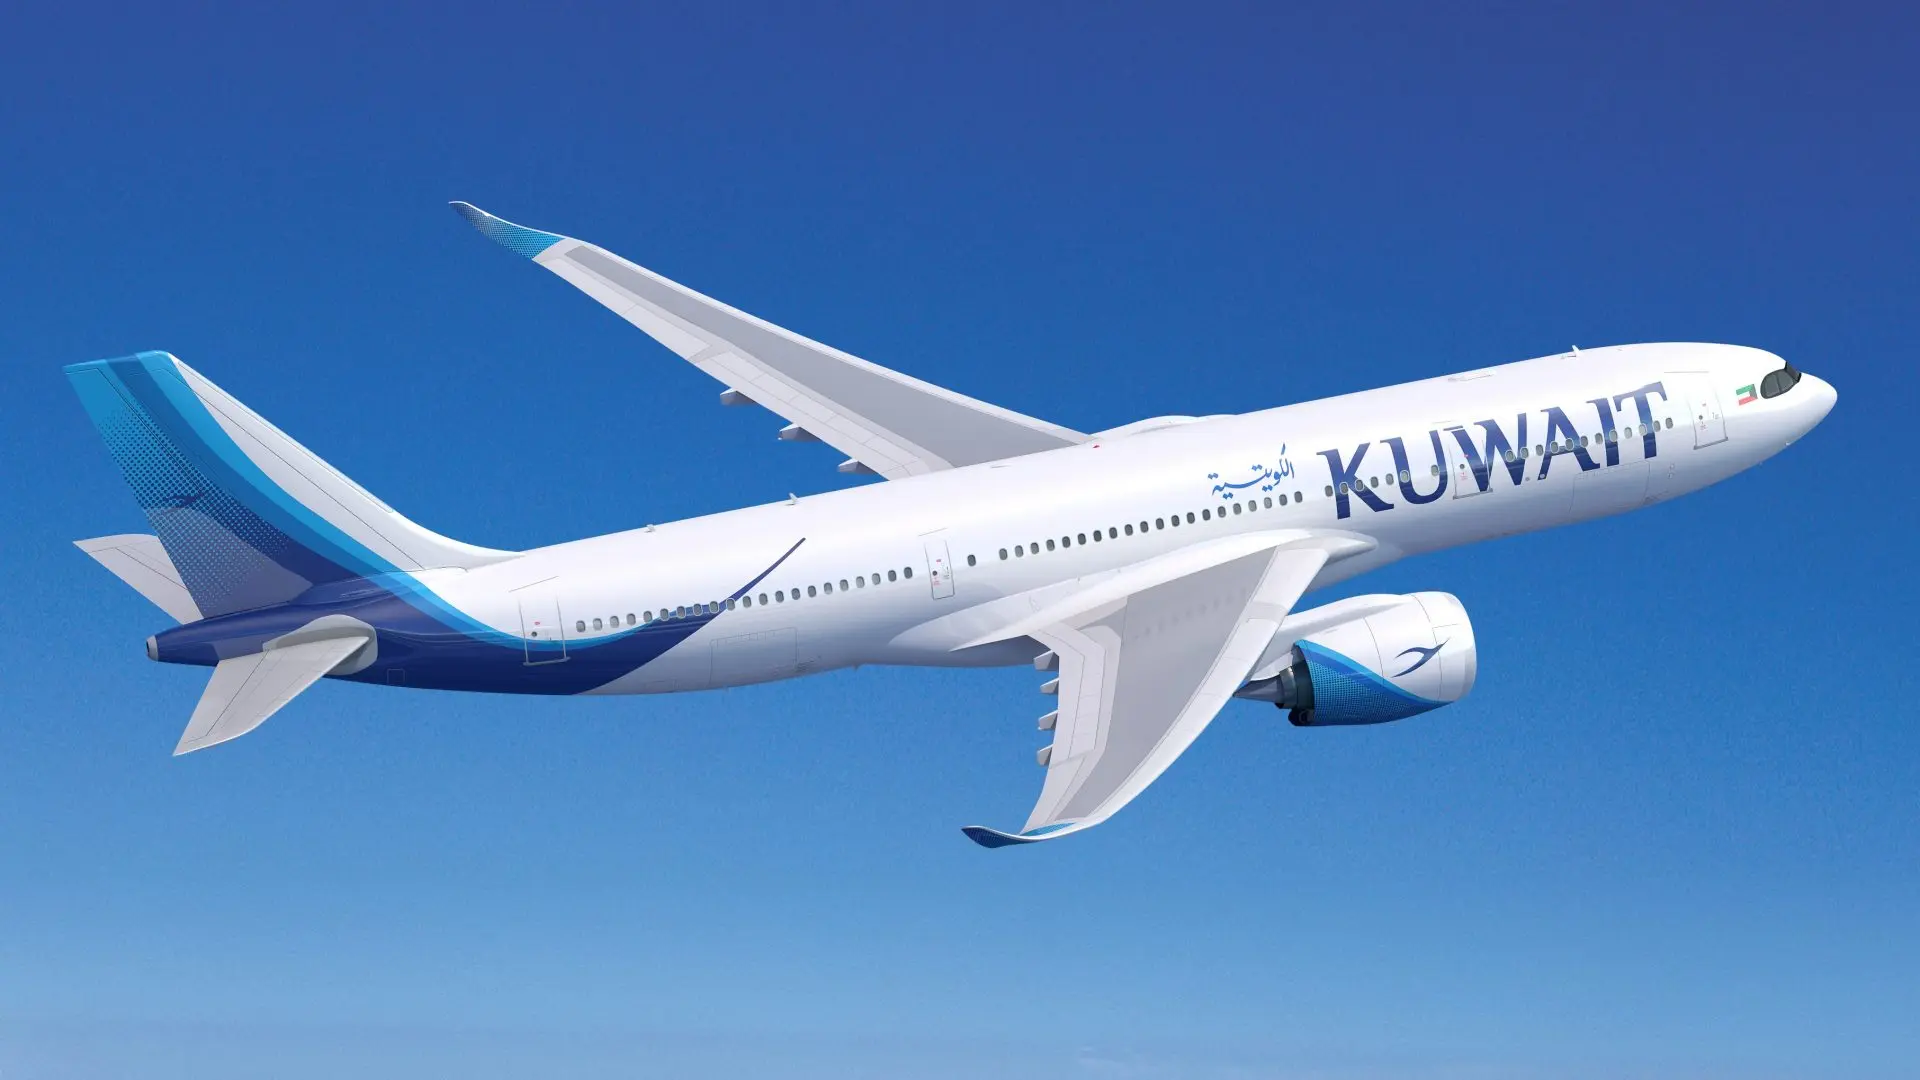 Kuwait Airways' rare A330-800neo